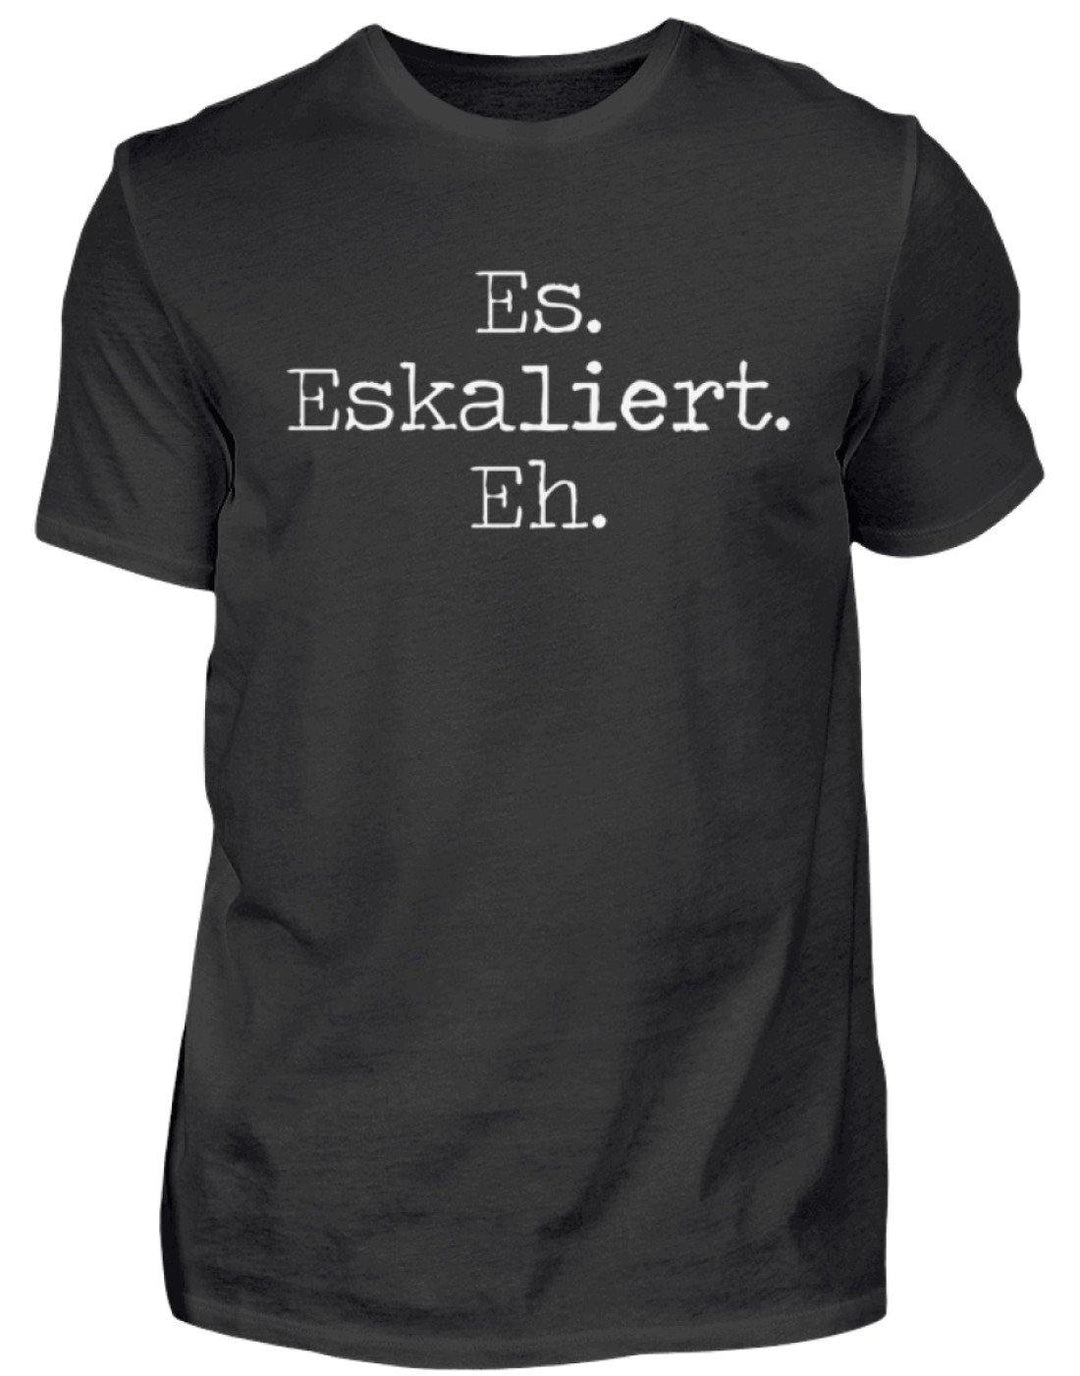 Es Eskaliert Eh - Words on Shirts (6)  - Herren Shirt - Words on Shirts Sag es mit dem Mittelfinger Shirts Hoodies Sweatshirt Taschen Gymsack Spruch Sprüche Statement